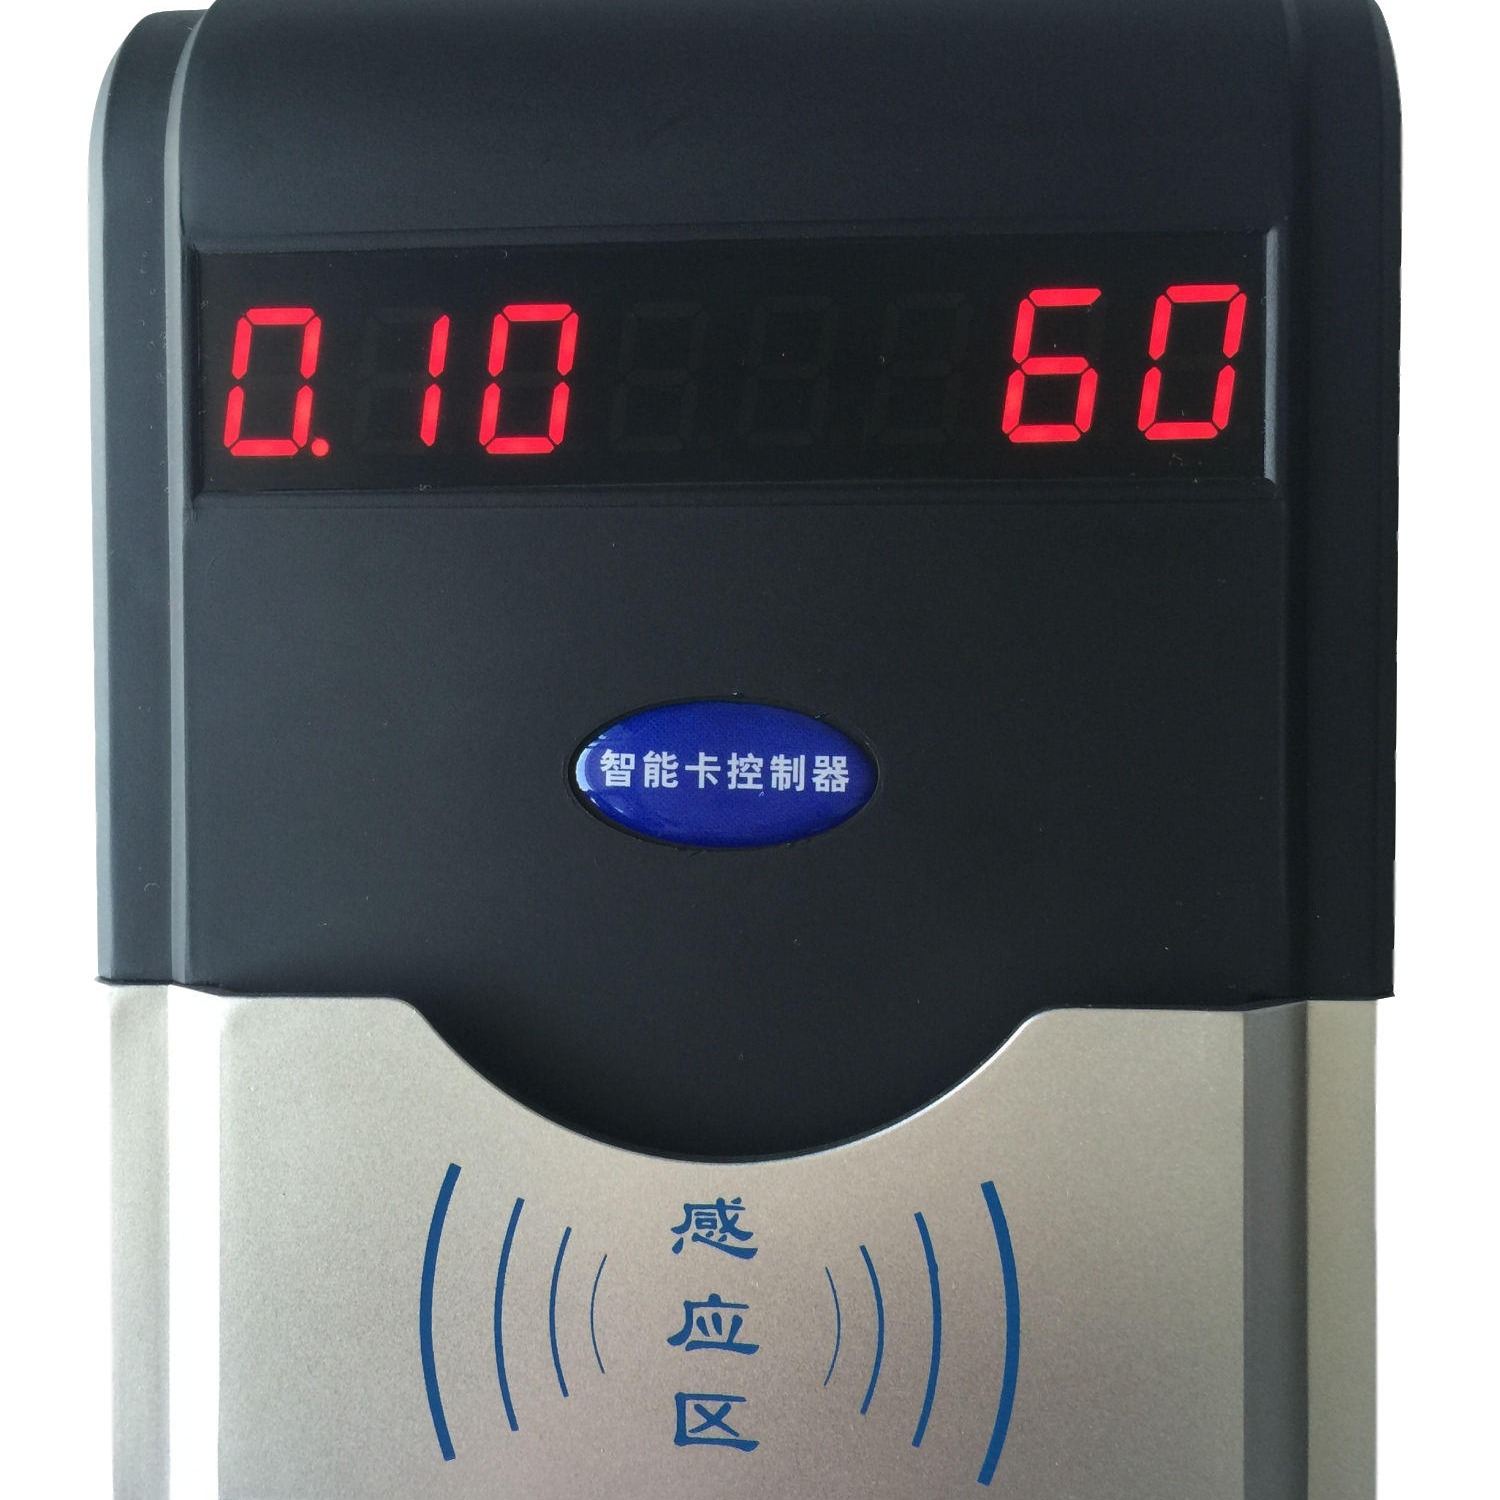 兴天下HF-660刷卡水控系统澡堂刷卡节水系统IC卡水控器